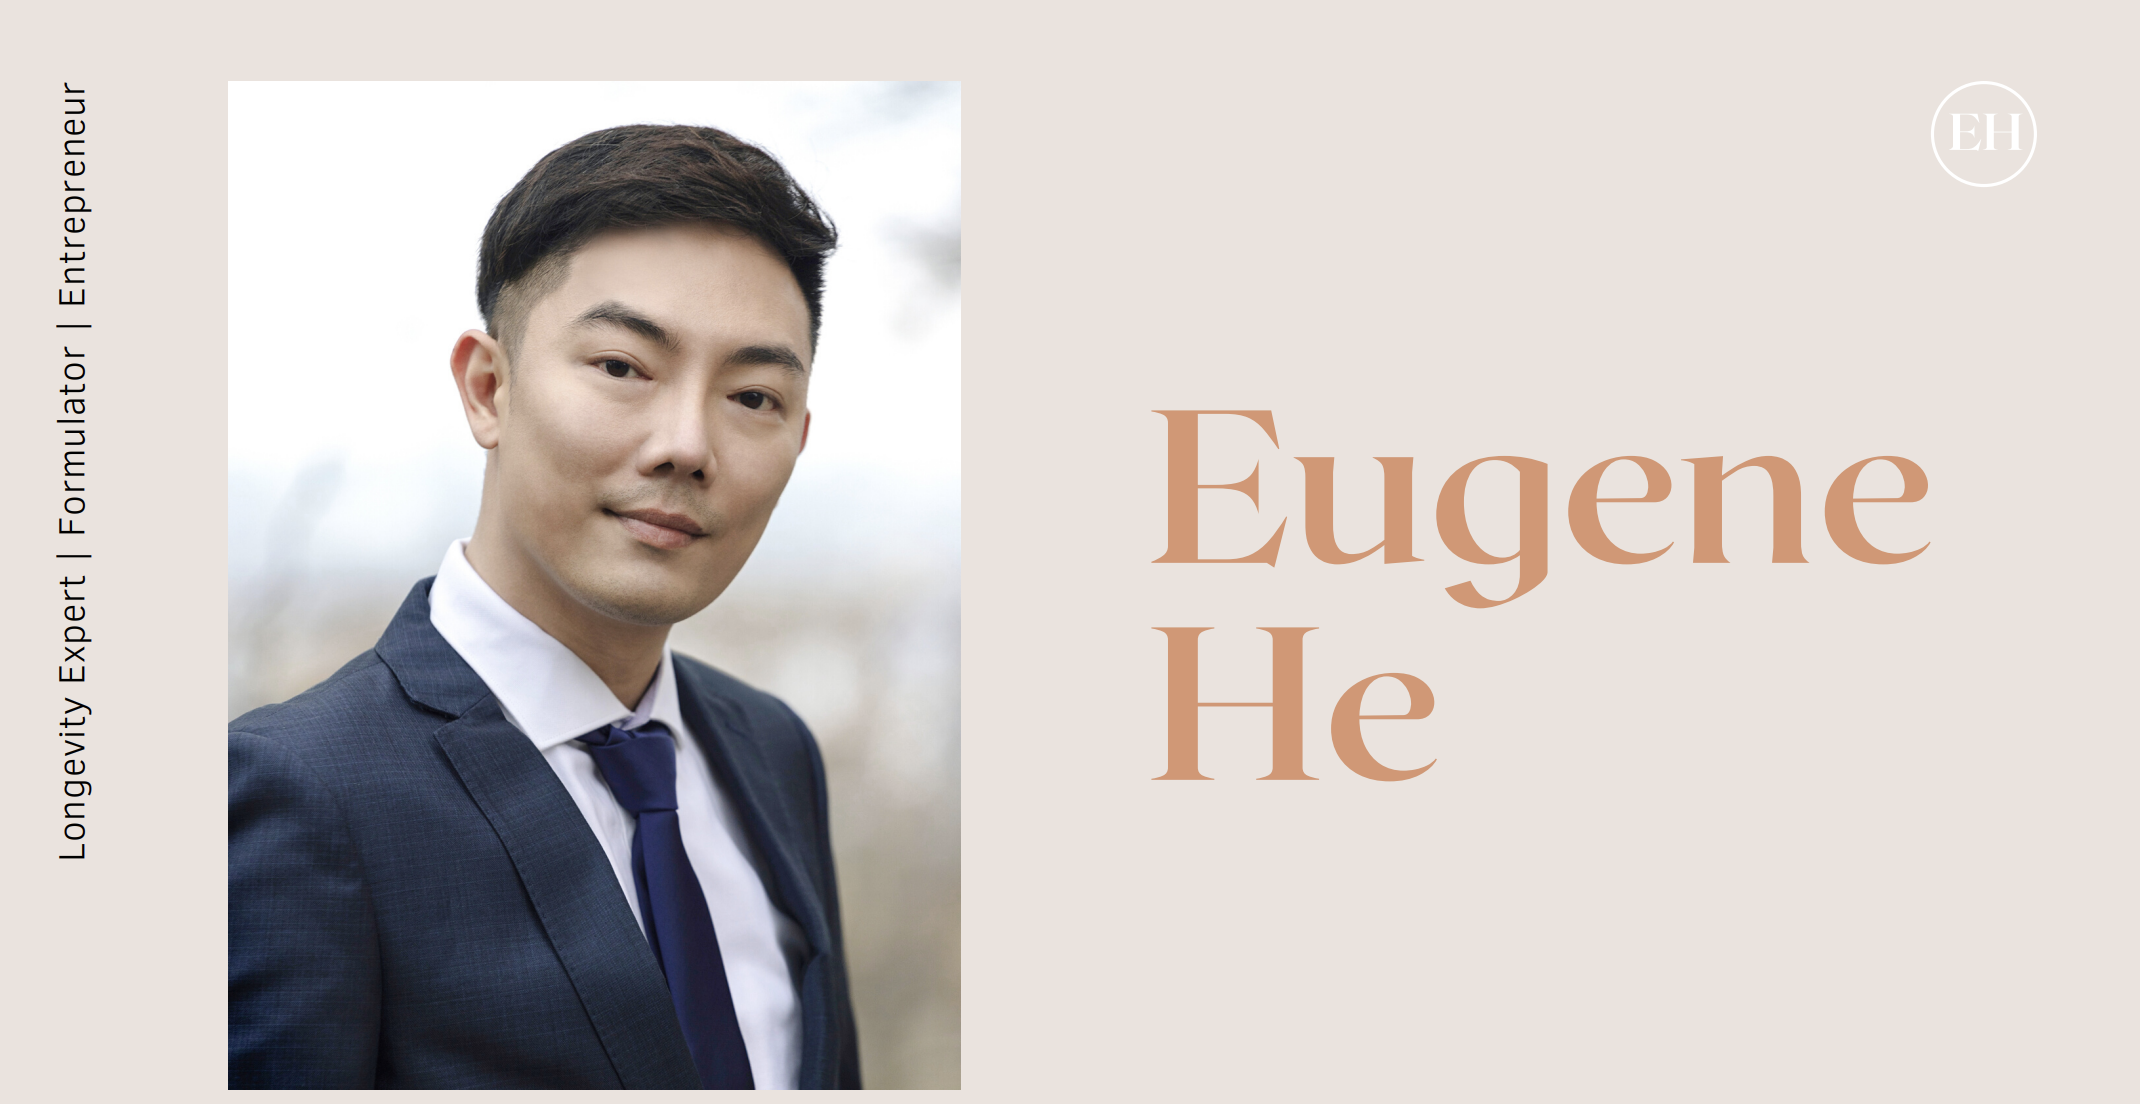 Founder - Eugene He